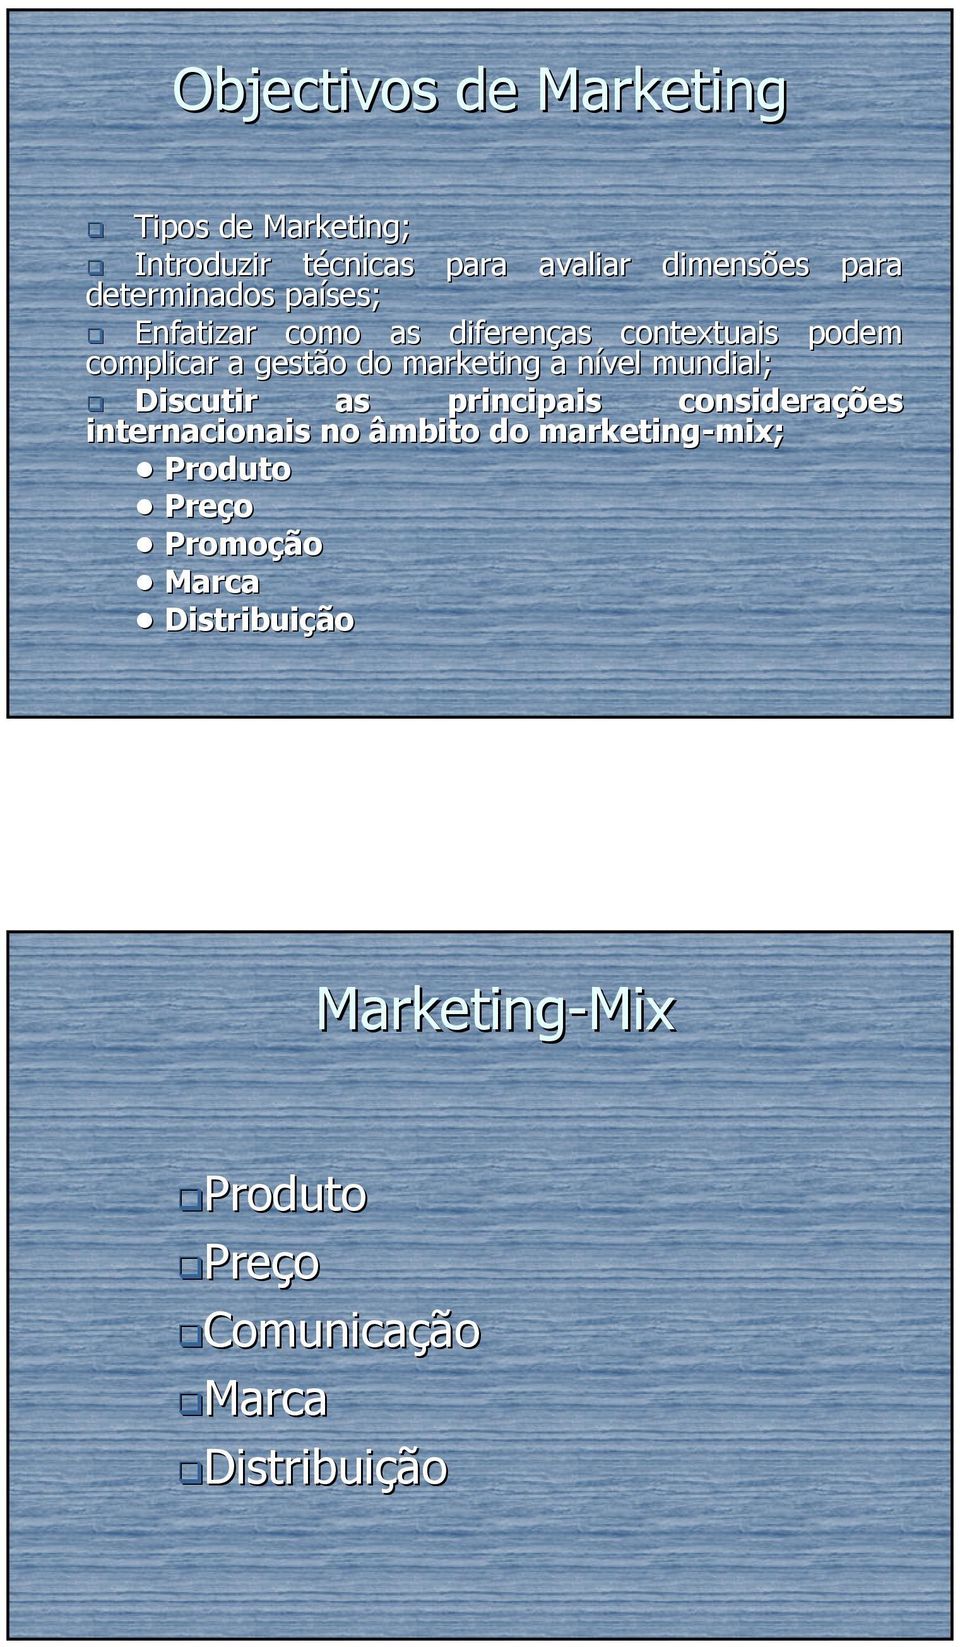 a nível n mundial; Discutir as principais considerações internacionais no âmbito do marketing-mix